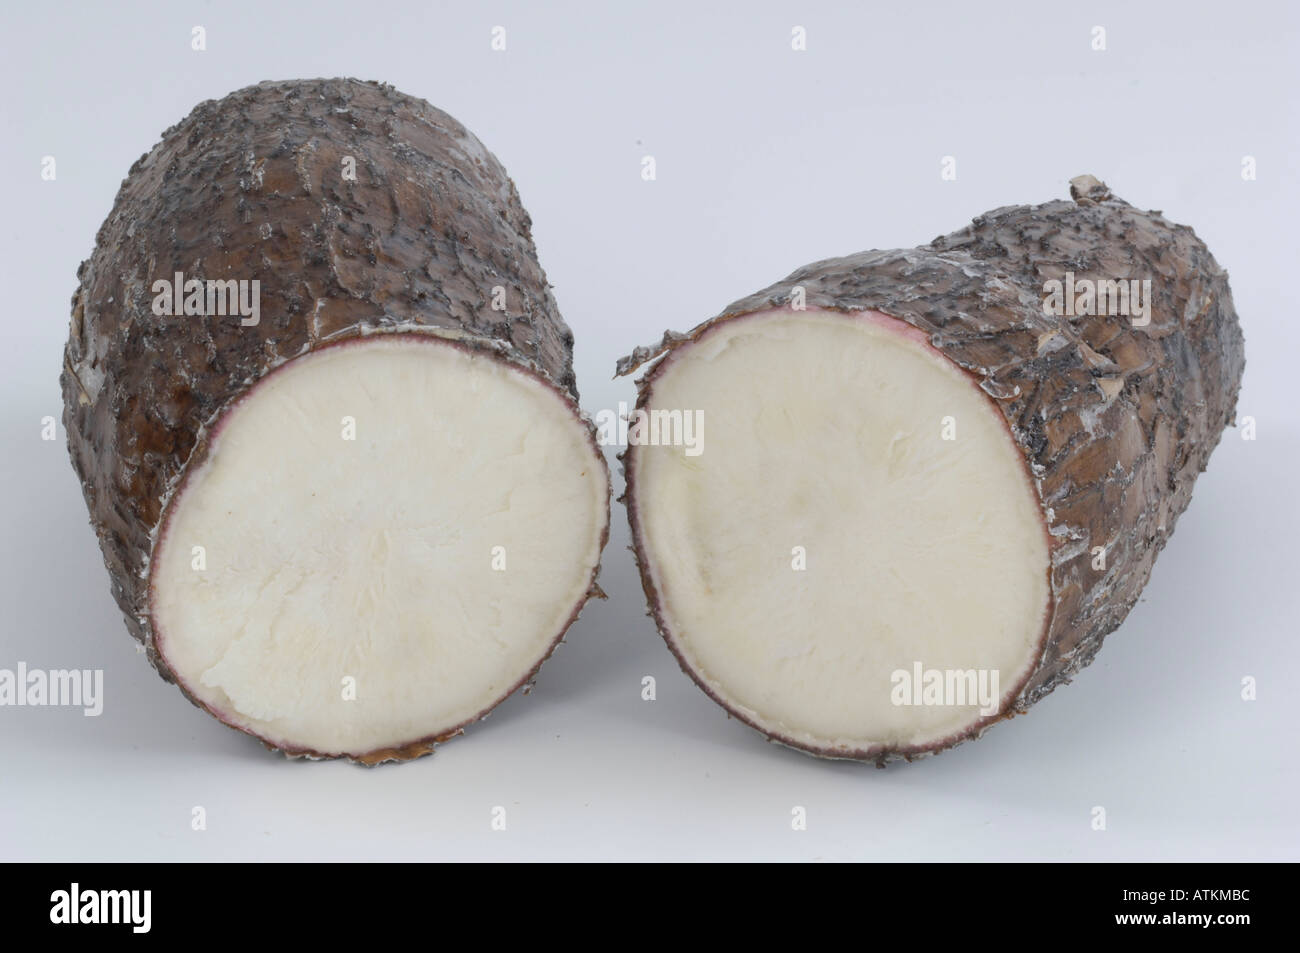 Cassava / Yuca Stock Photo